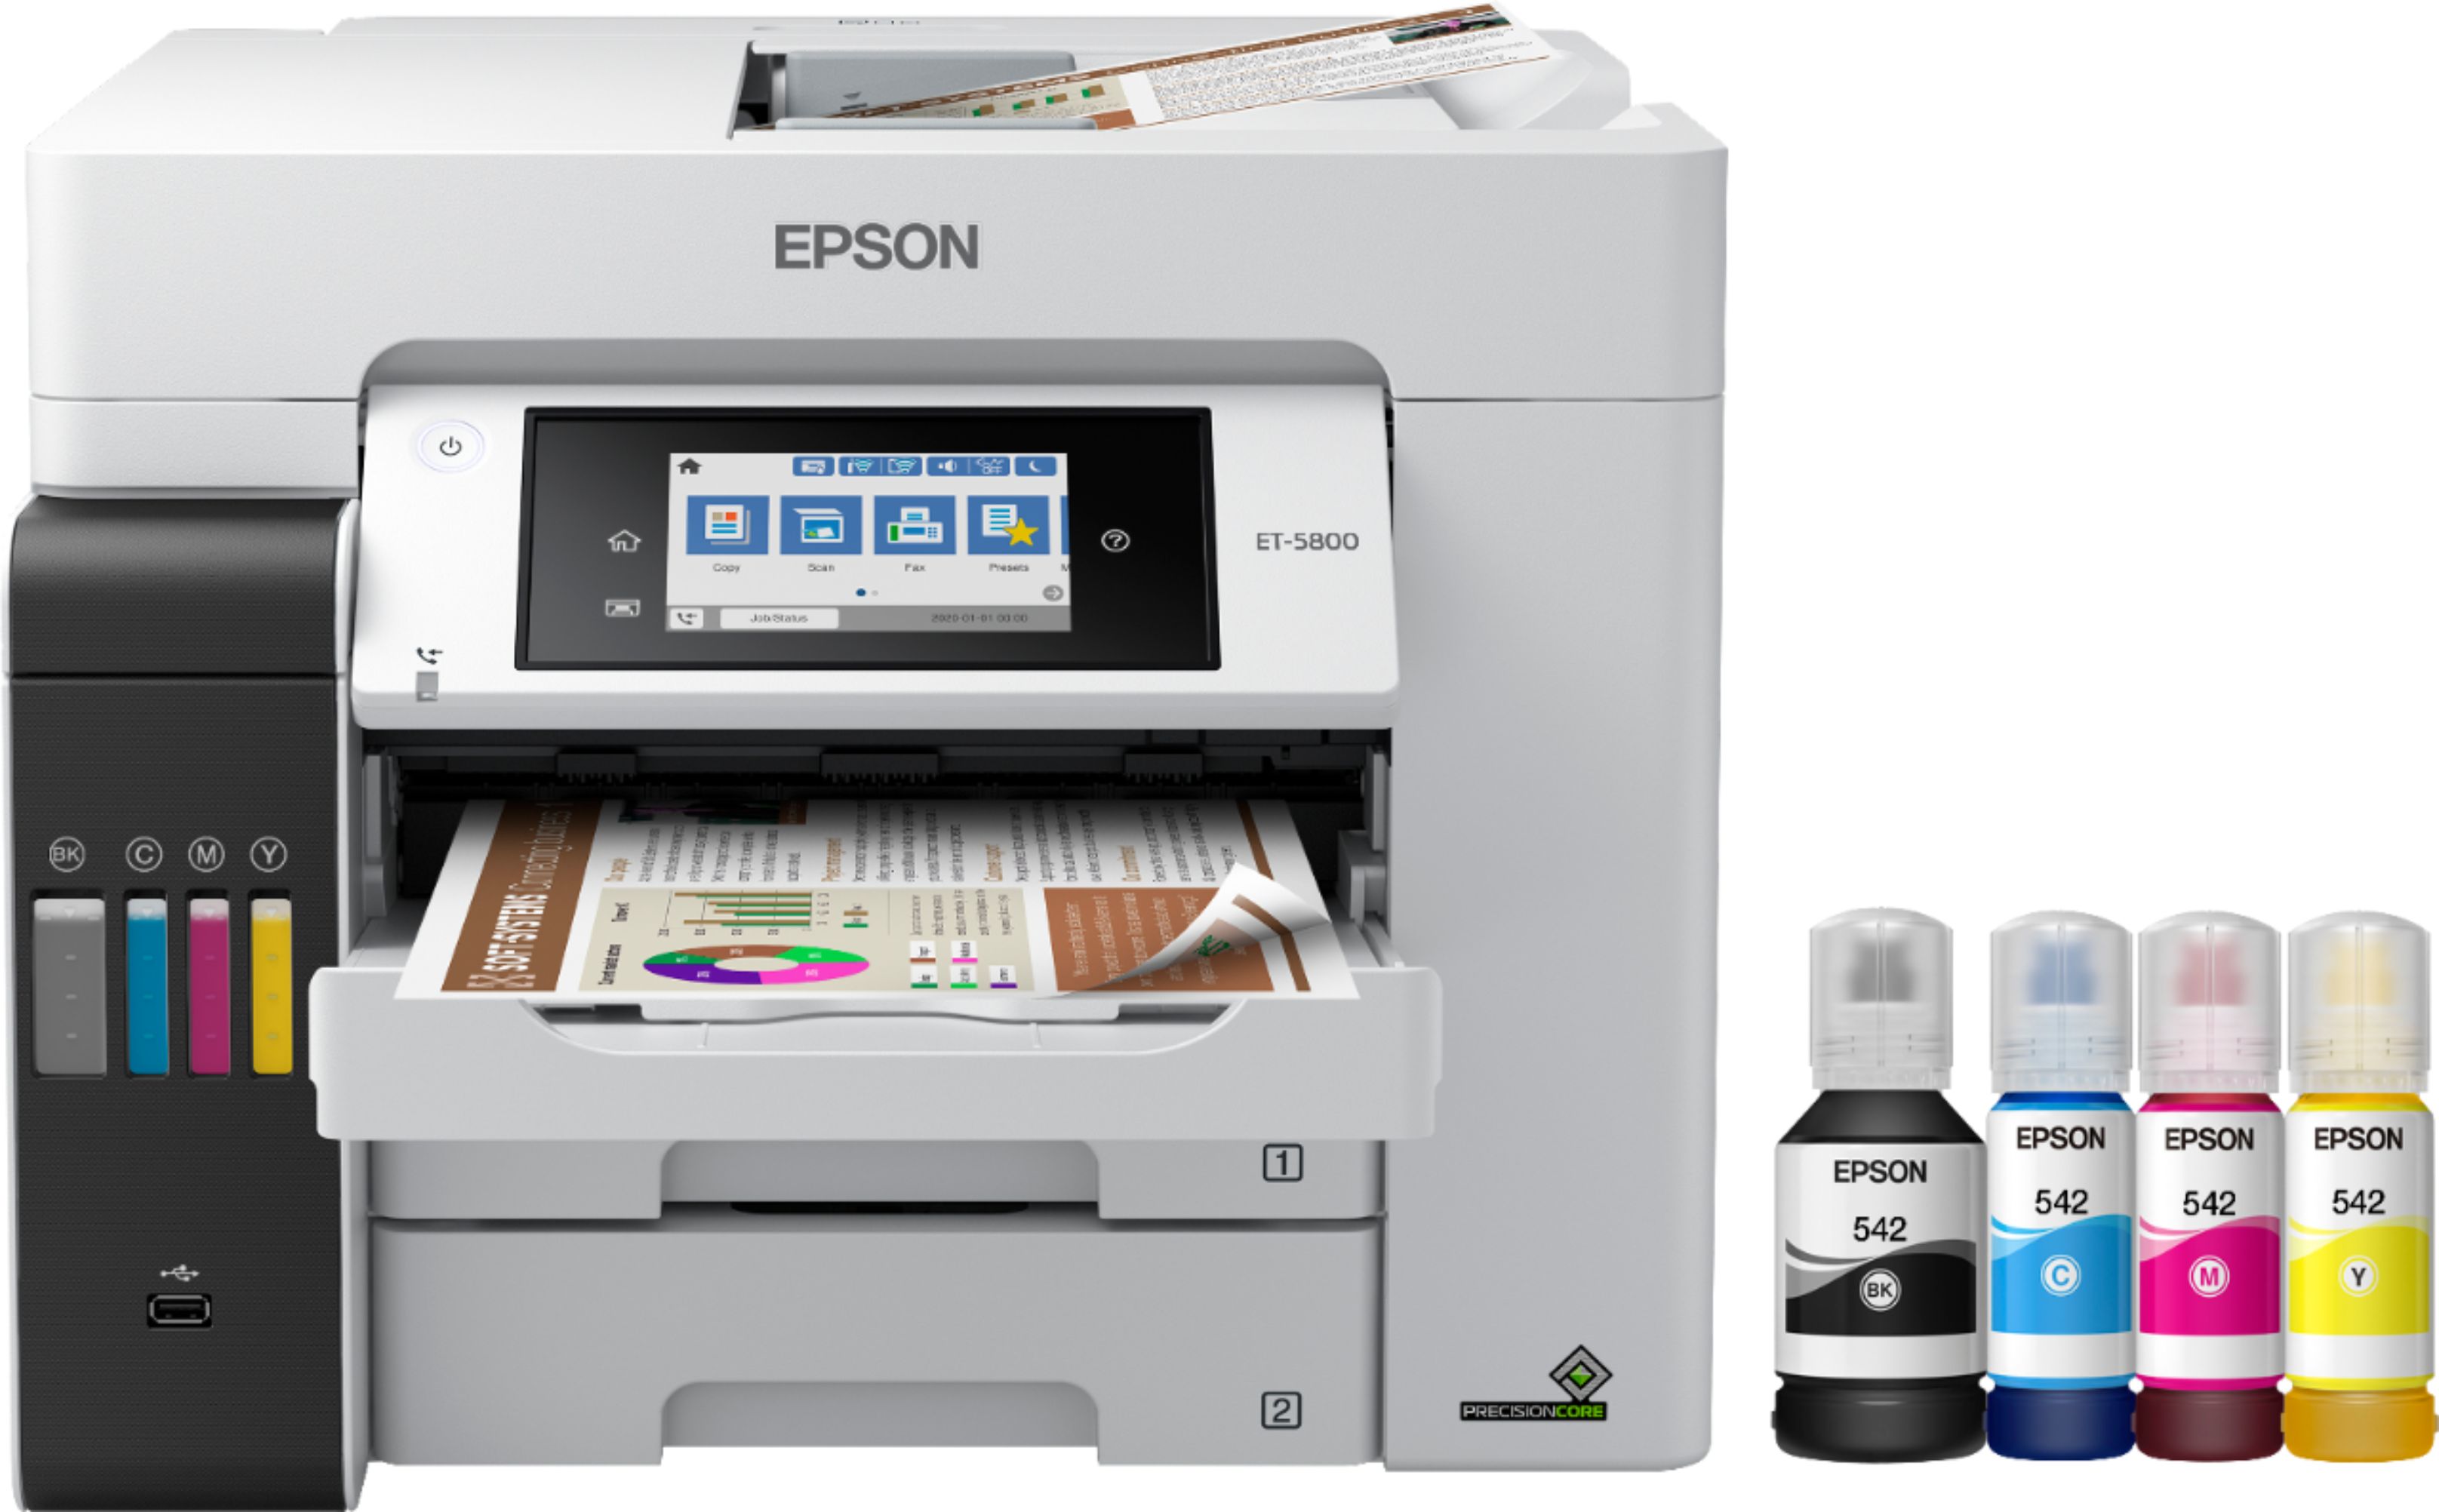 Epson Premium Photo Paper 8 x 10 68 Lb High Gloss White 20 Sheets